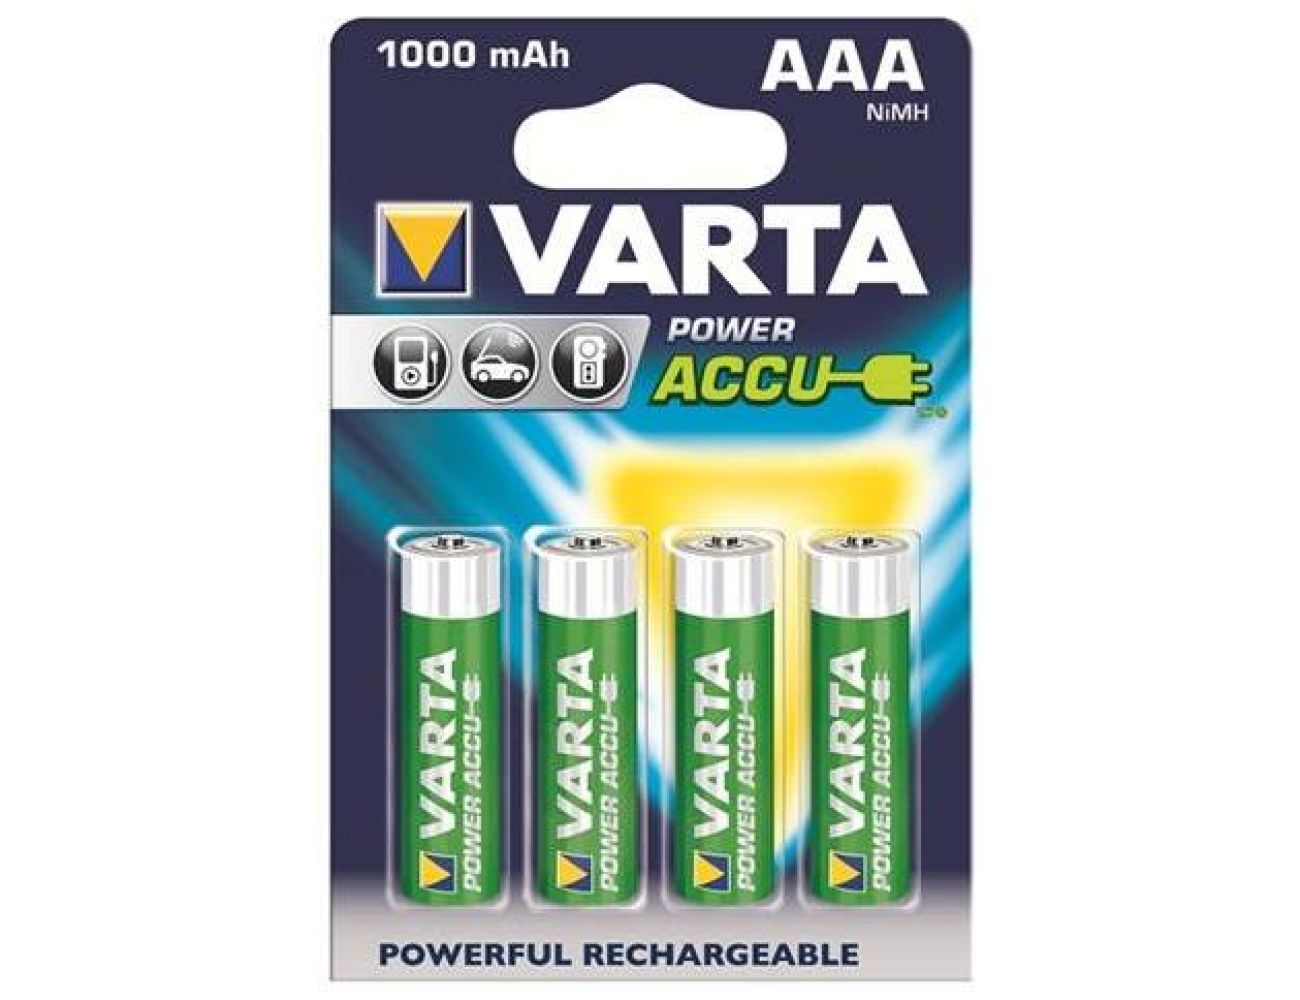 Аккумуляторные батарейки ААА Varta 1000 mAh Power 4/4 56763101404